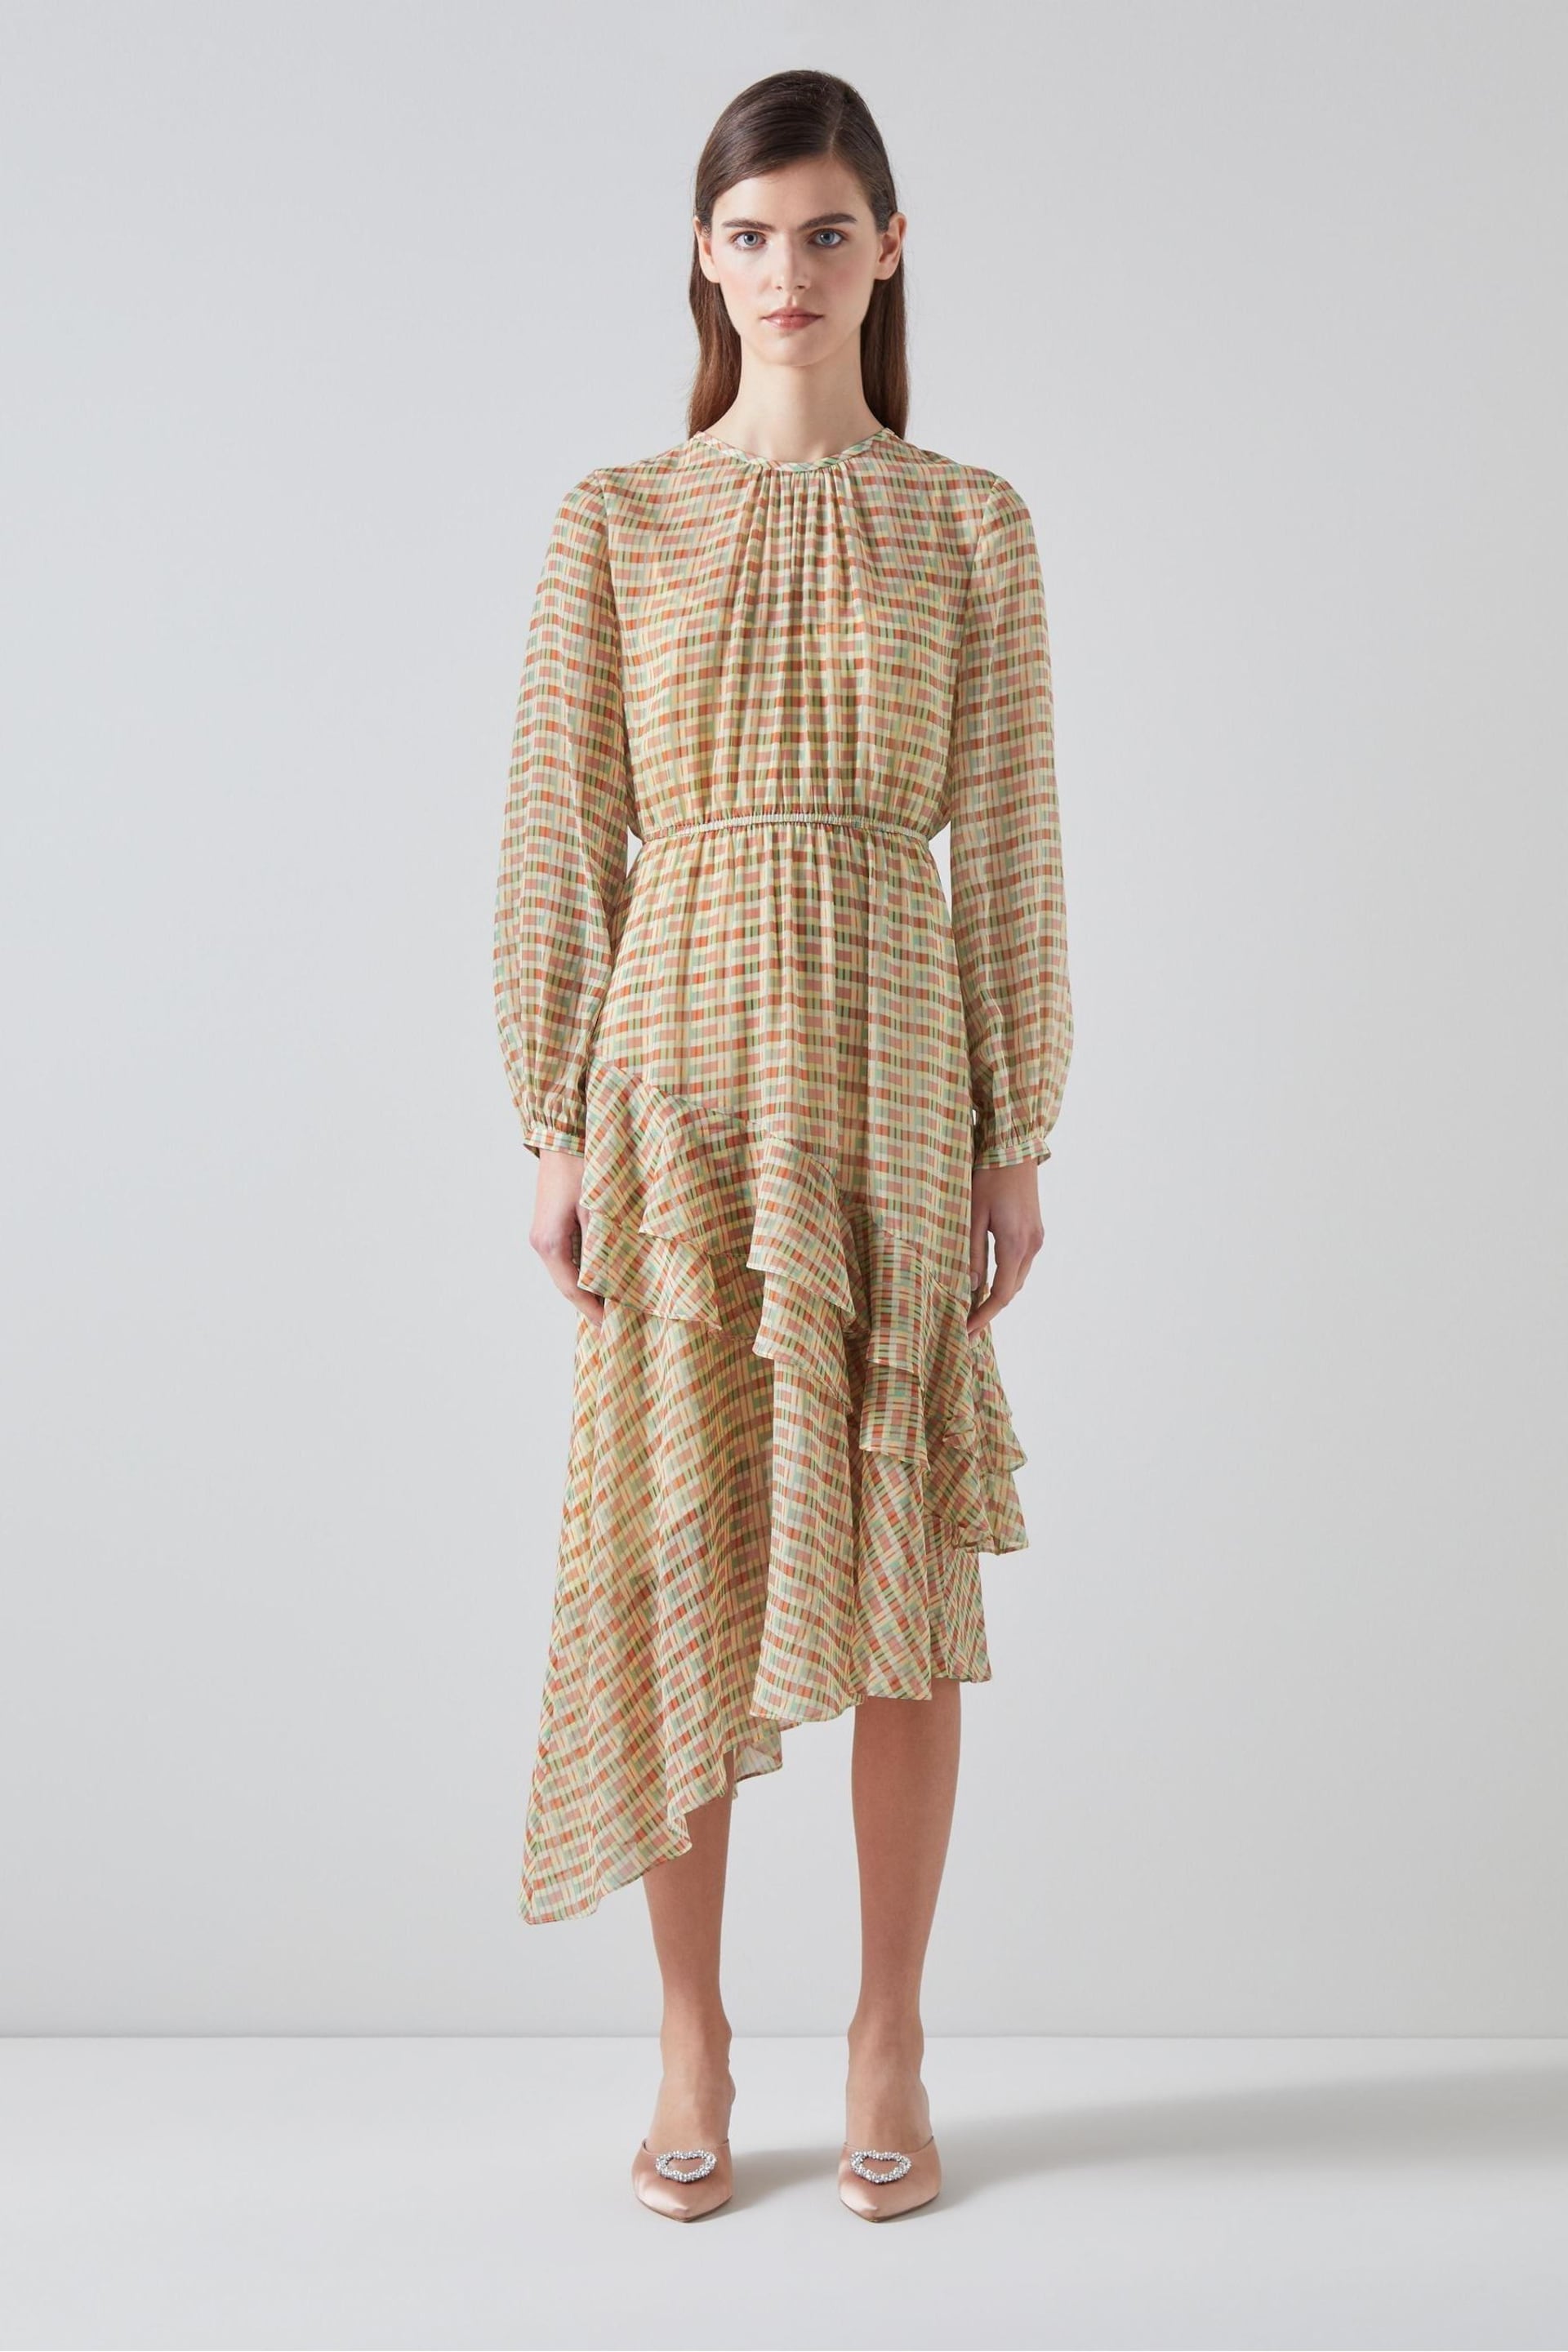 LK Bennett Mini Bea Check Silk Chiffon Ruffle Dress - Image 1 of 5